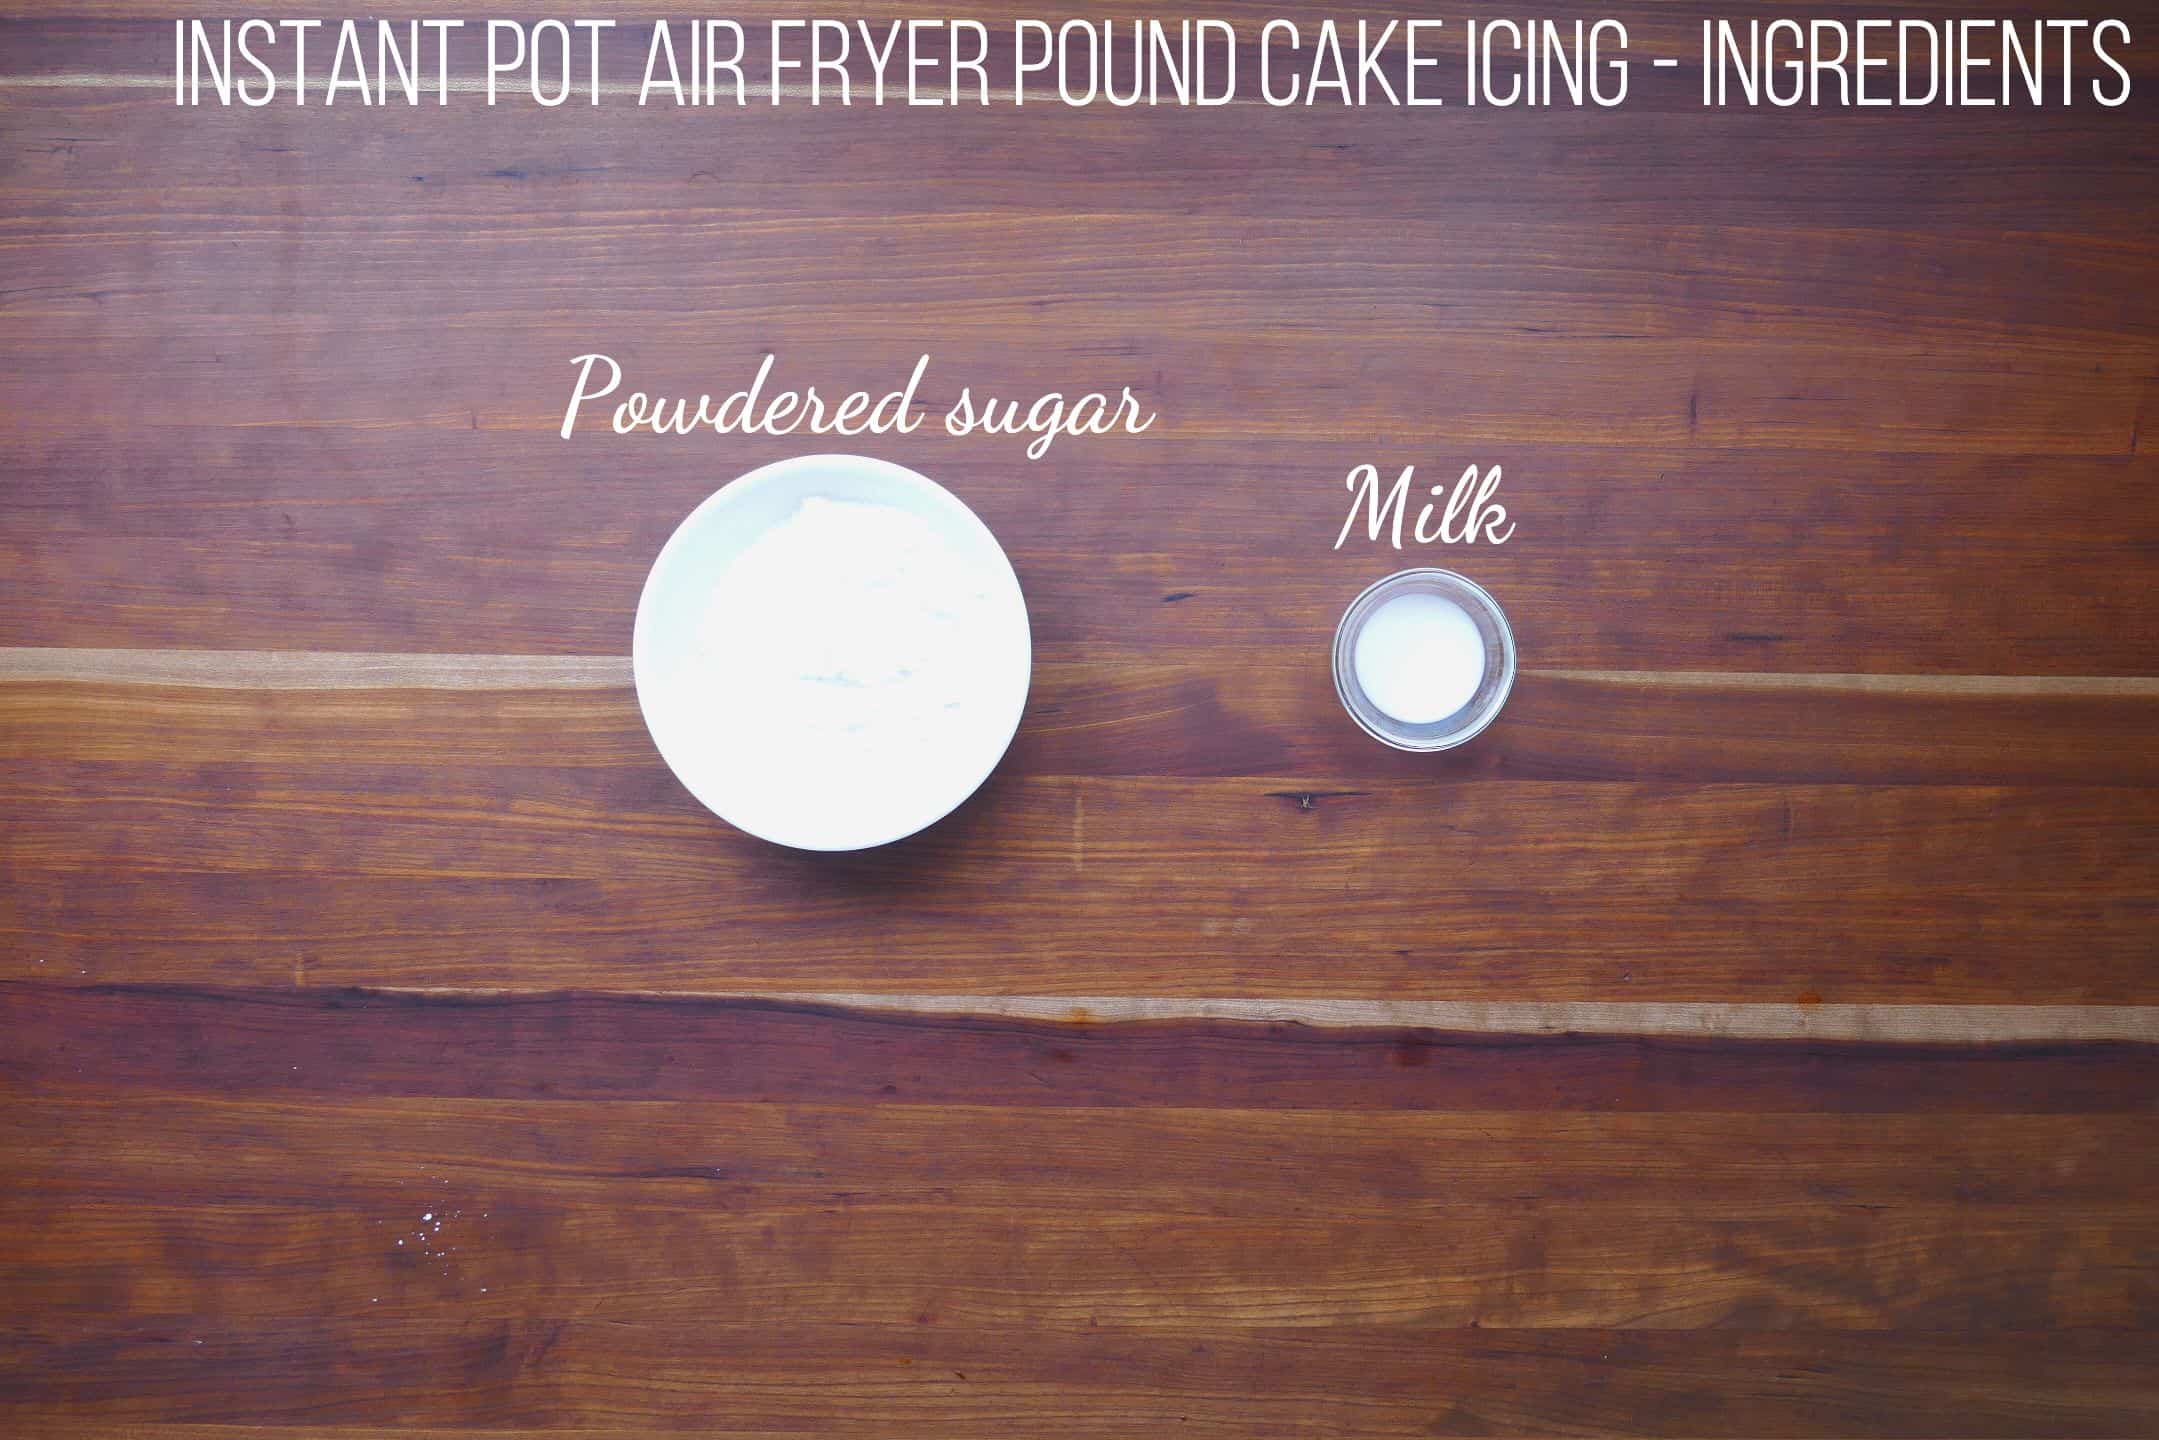 Instant Pot Air Fryer Pound Cake Icing Ingredients - powdered sugar, milk